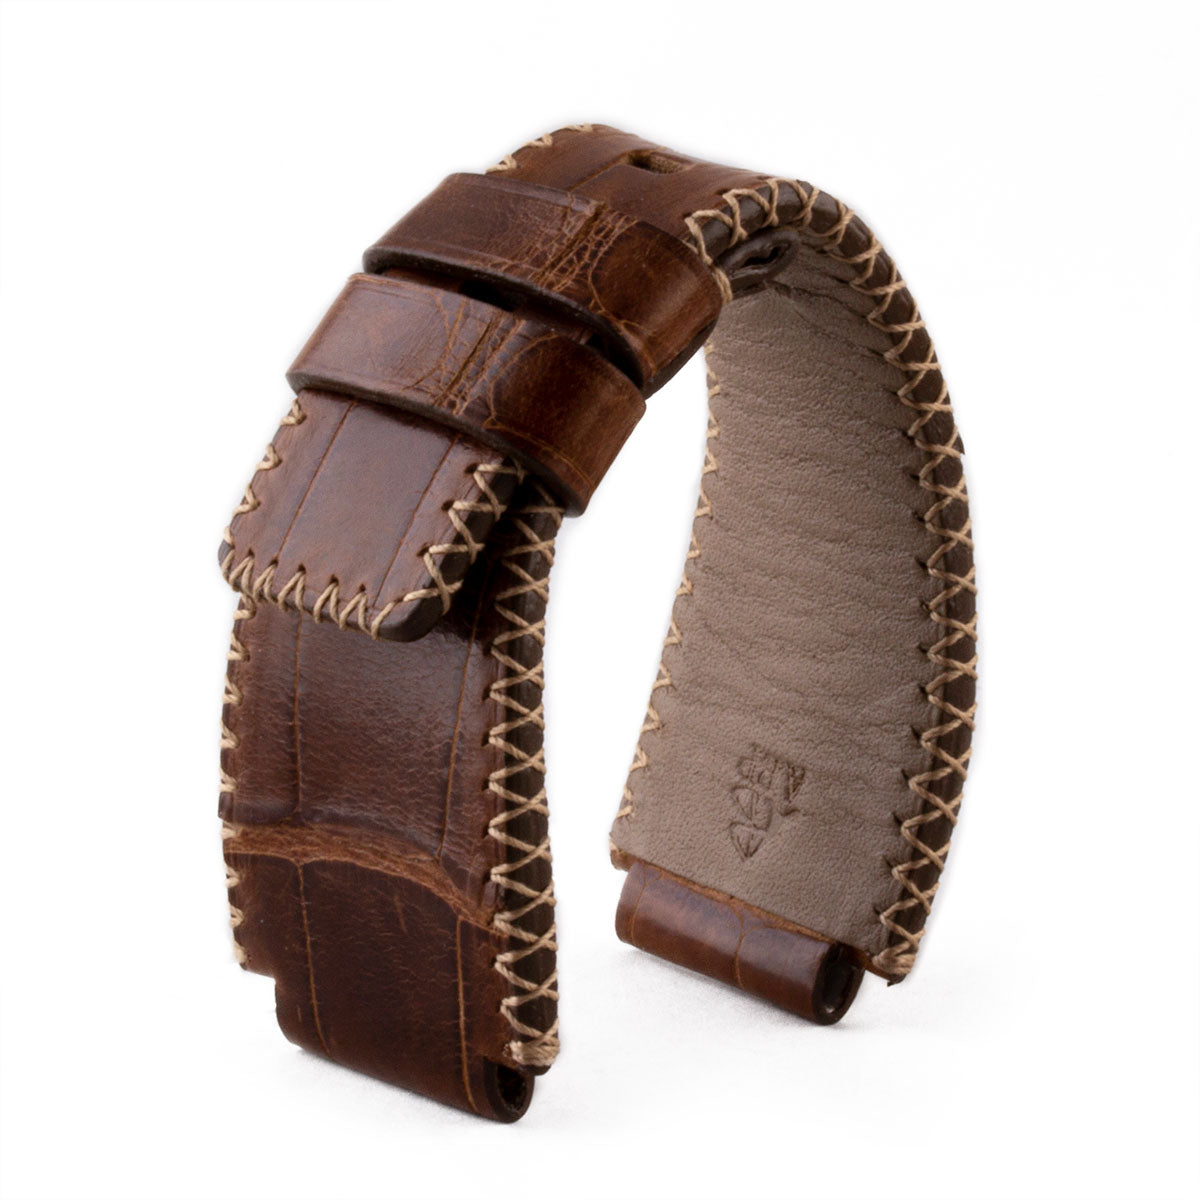 Bell & Ross - Bracelet-montre cuir - Alligator couture tribale (noir / marron, marron / marron) - watch band leather strap - ABP Concept -